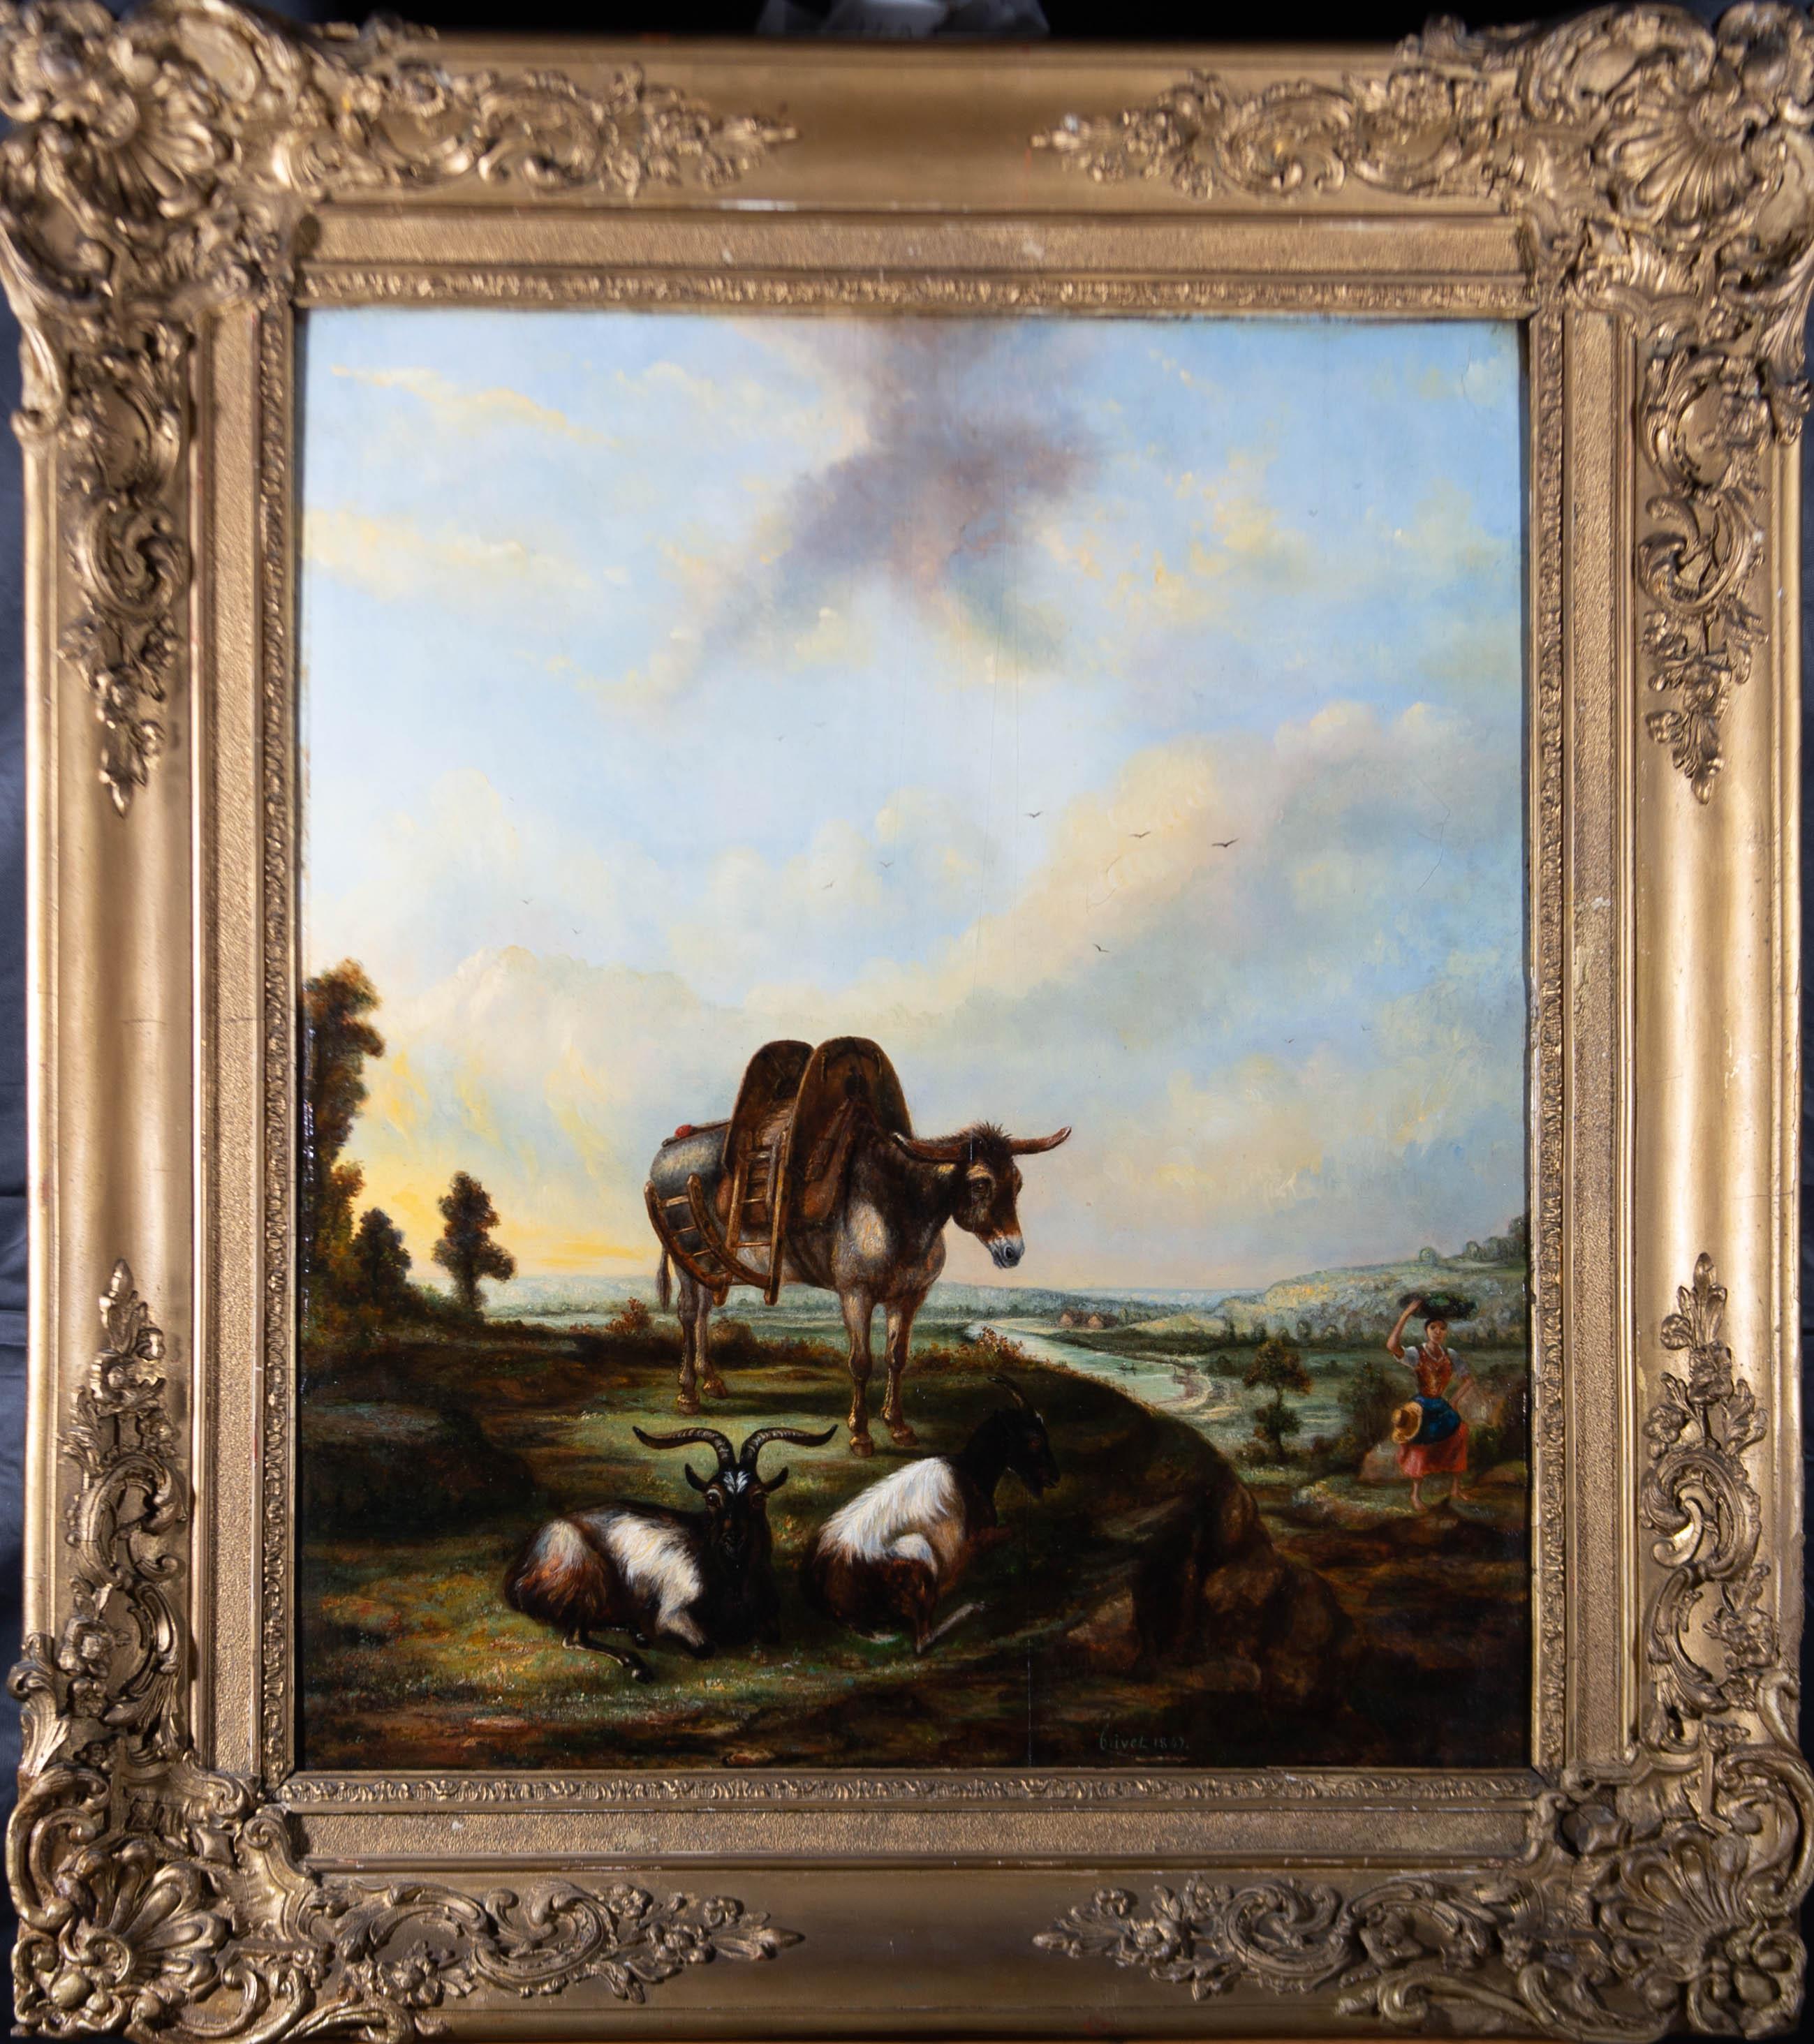 Un bel exemple de paysage à l'huile de l'école hollandaise. Un âne muni d'une selle porteuse se tient sur un affleurement rocheux au bord d'un chemin, avec deux chèvres à cornes couchées à ses pieds. On peut voir une femme se frayer un chemin sur le